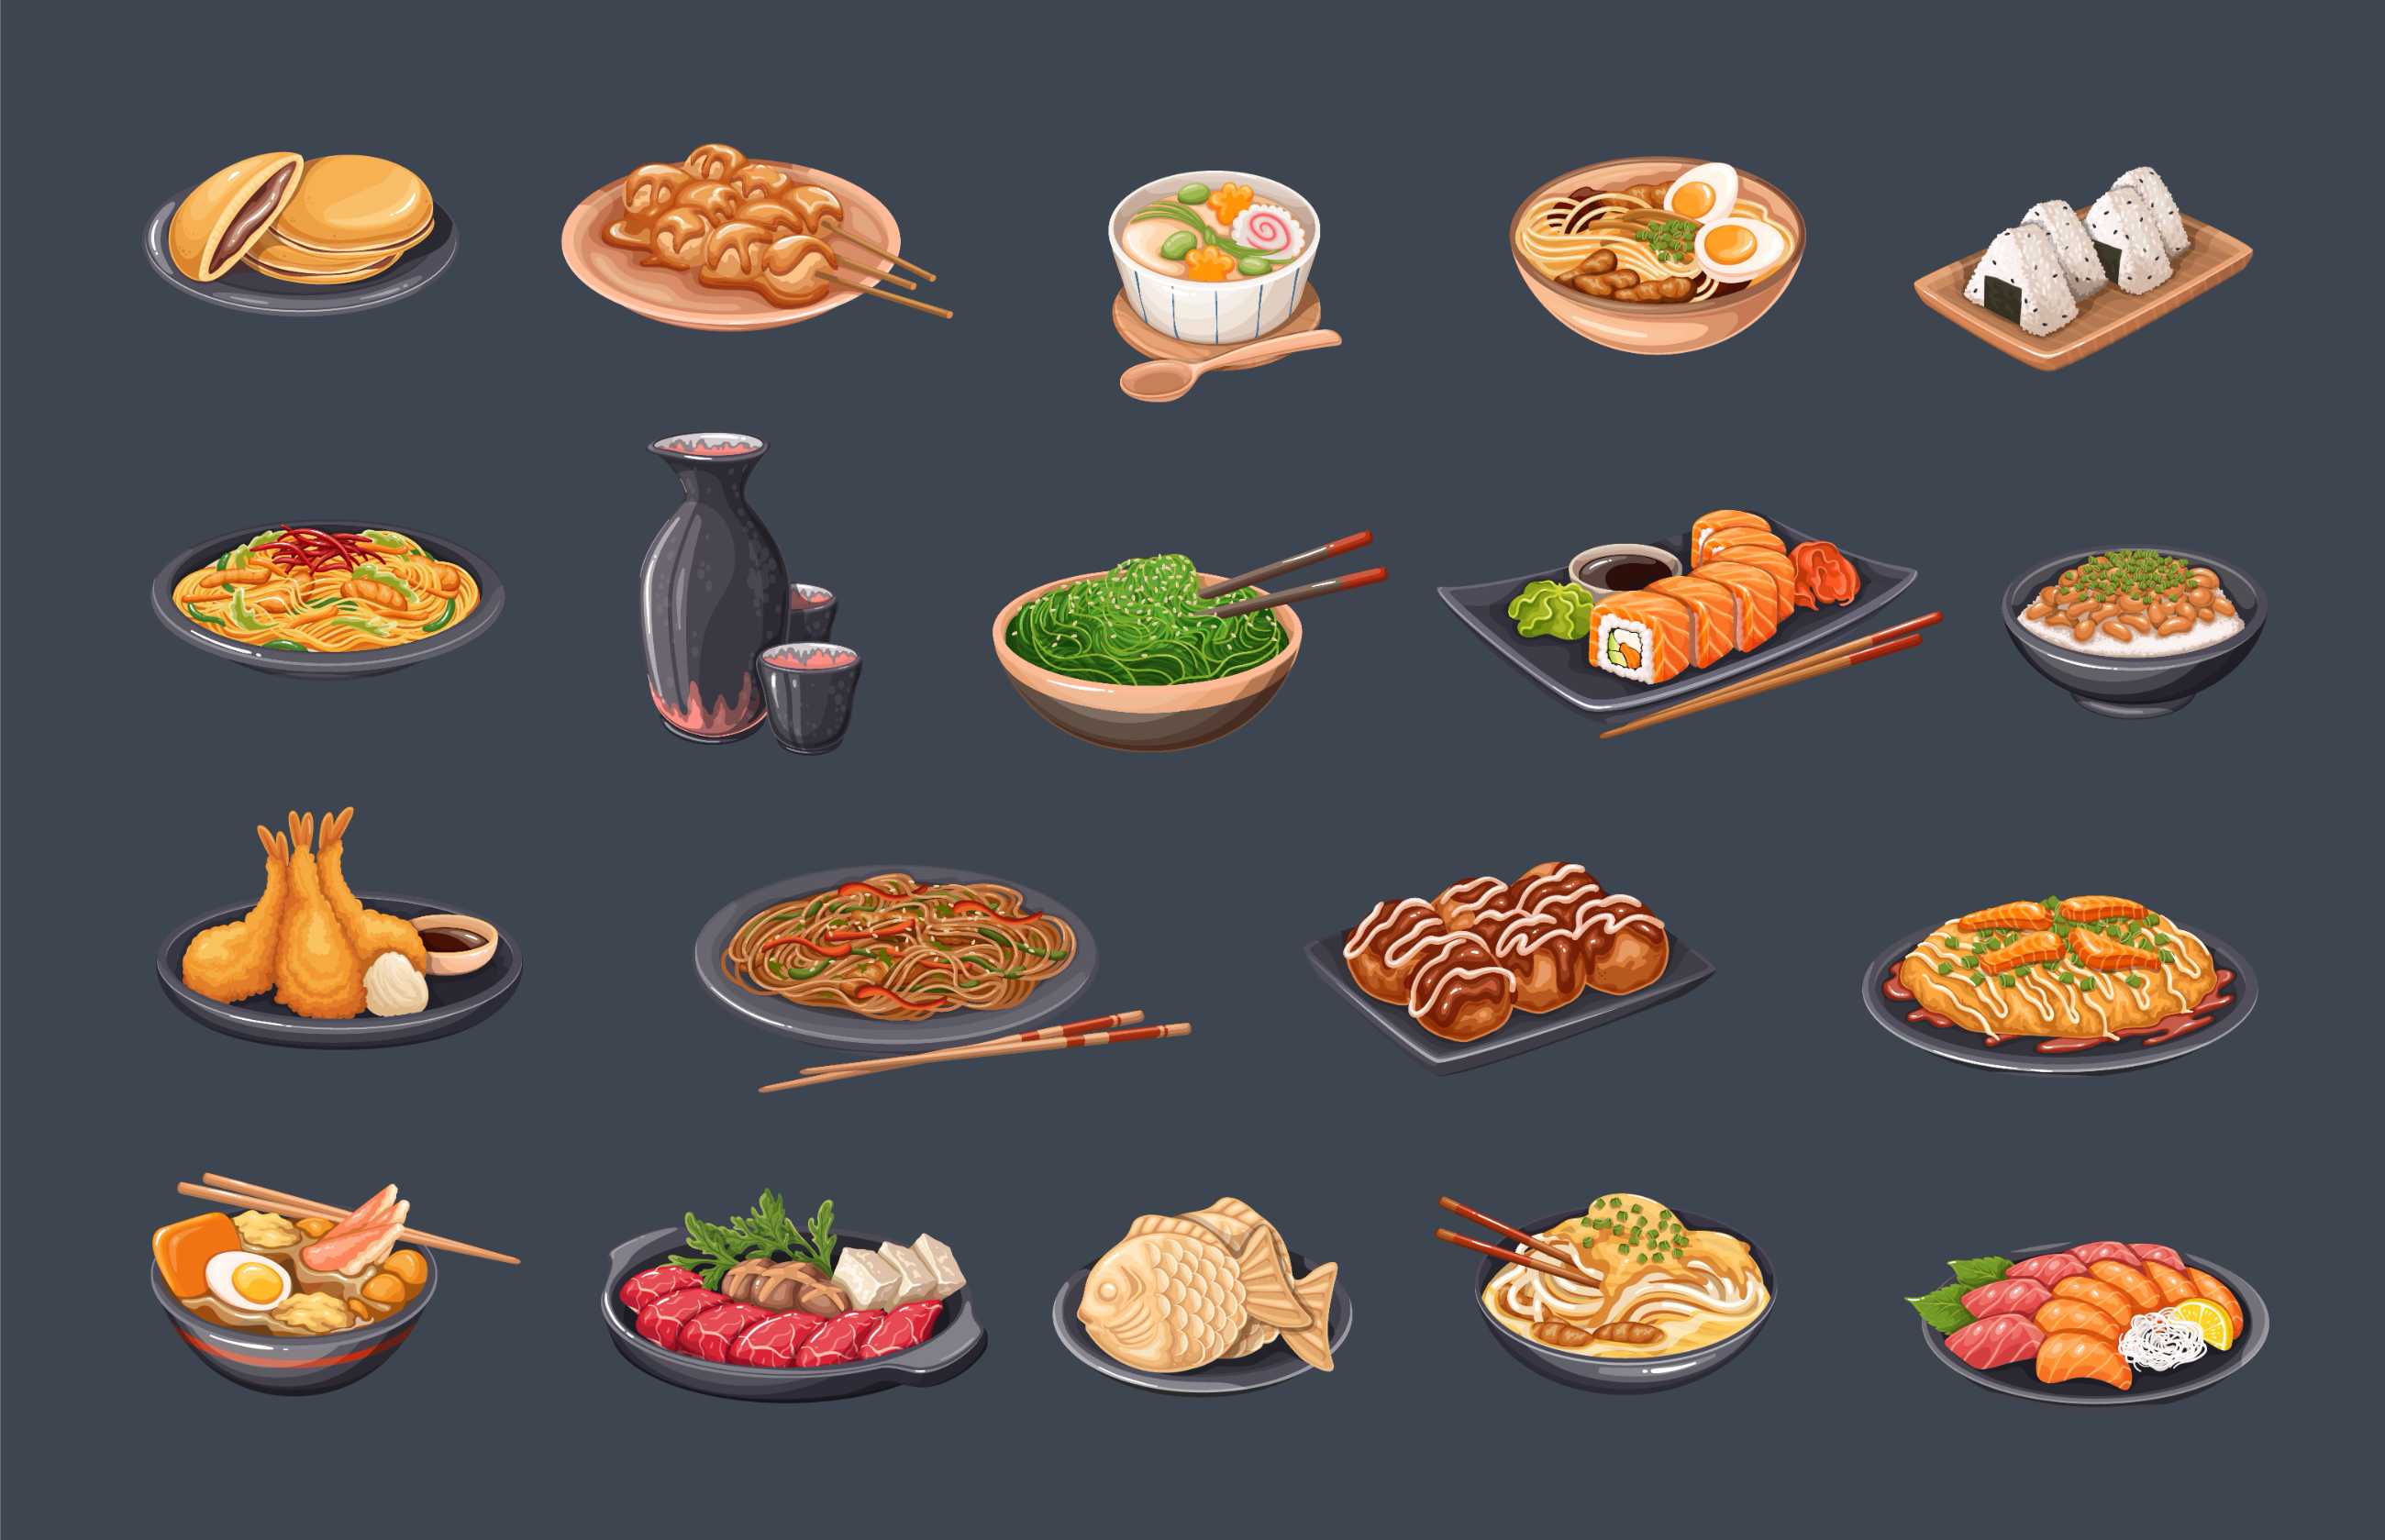 日本菜配亚洲菜筷子和碗,配上熟面寿司和卷